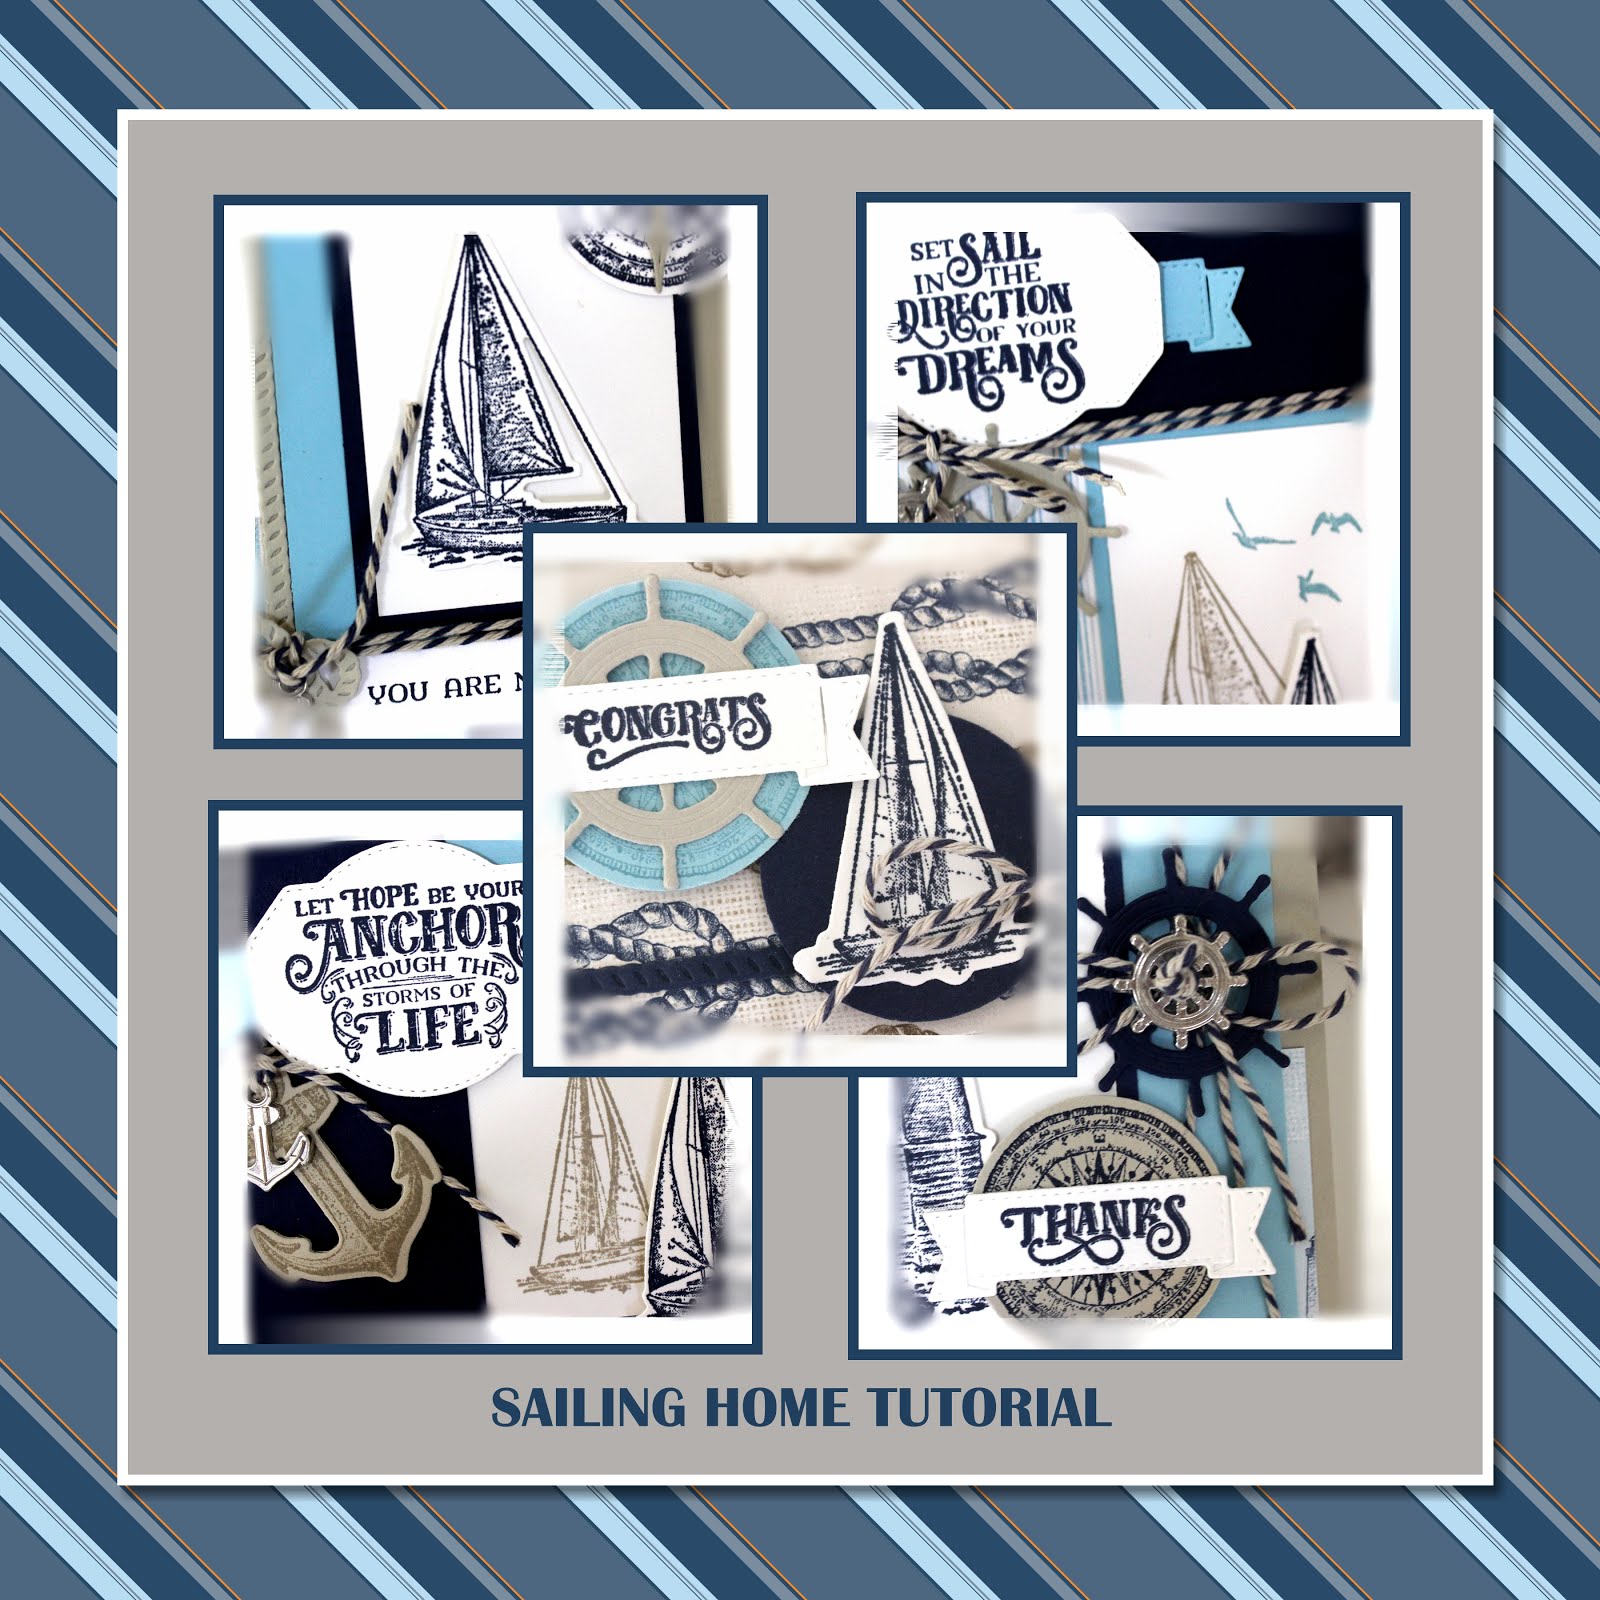 June 2019 Sailing Home Tutorial